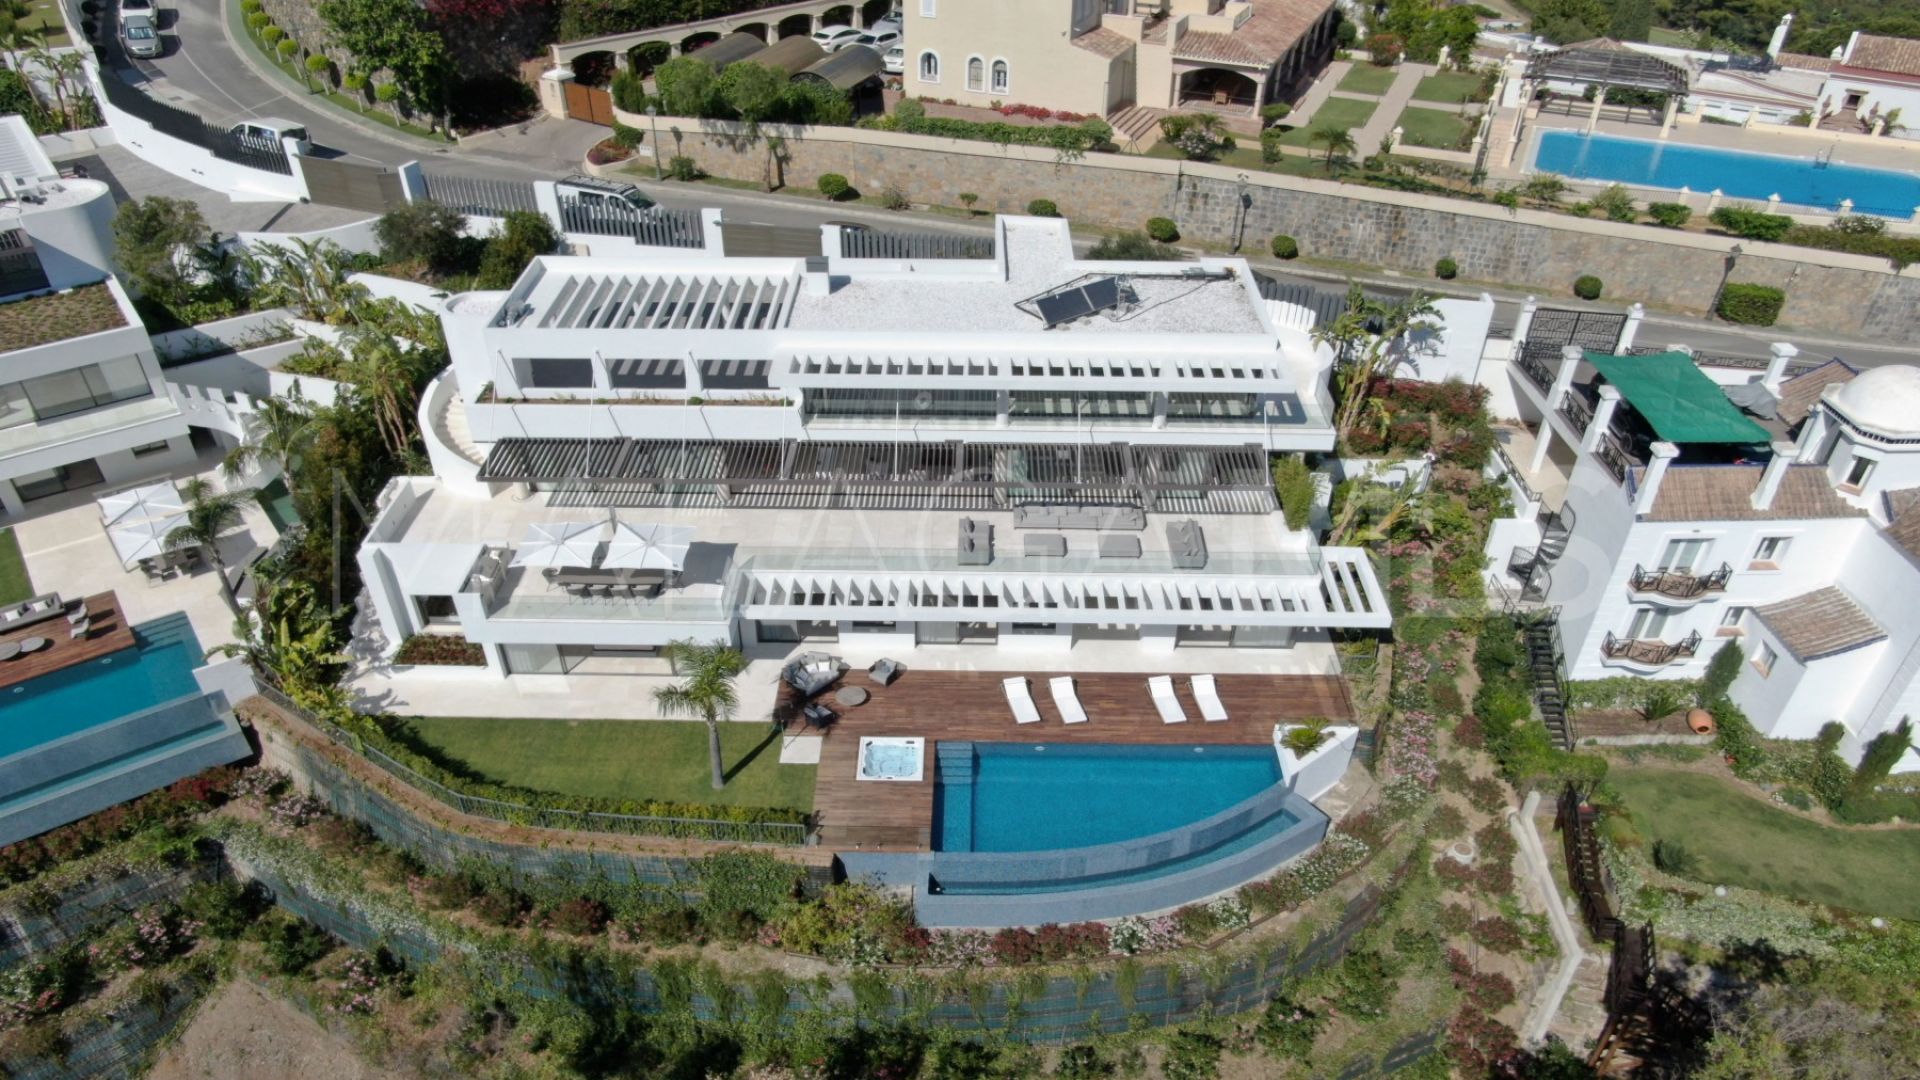 For sale La Quinta villa with 5 bedrooms